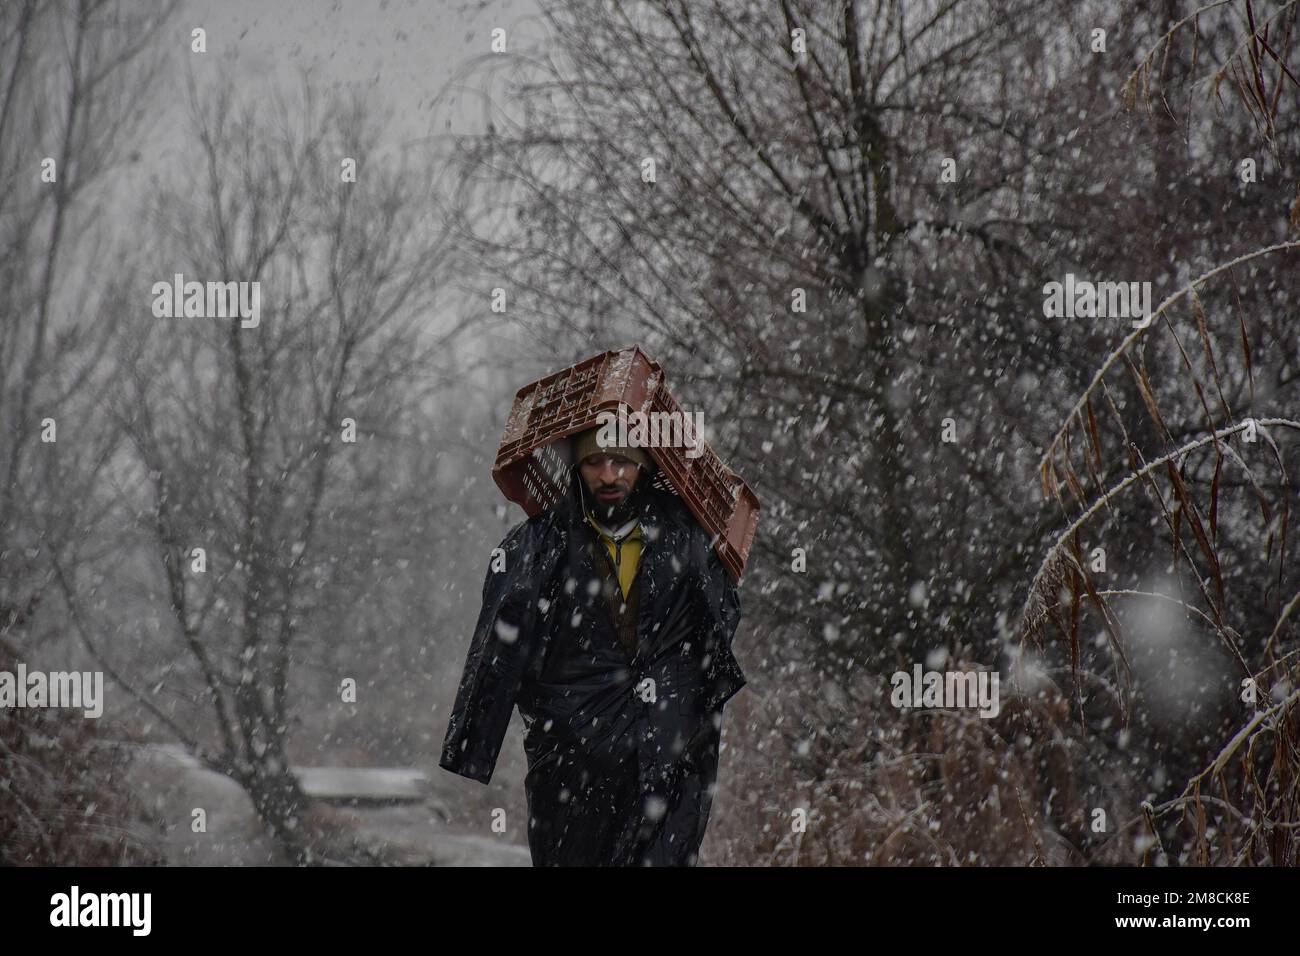 Un uomo copre la testa con una cassa mentre cammina lungo la strada durante la nevicata. Parti della valle di Kashmir compreso Srinagar ha ricevuto nevicate che portano alla chiusura della vitale Srinagar-Jammu autostrada nazionale e la cancellazione delle operazioni di volo, funzionari qui ha detto. Foto Stock